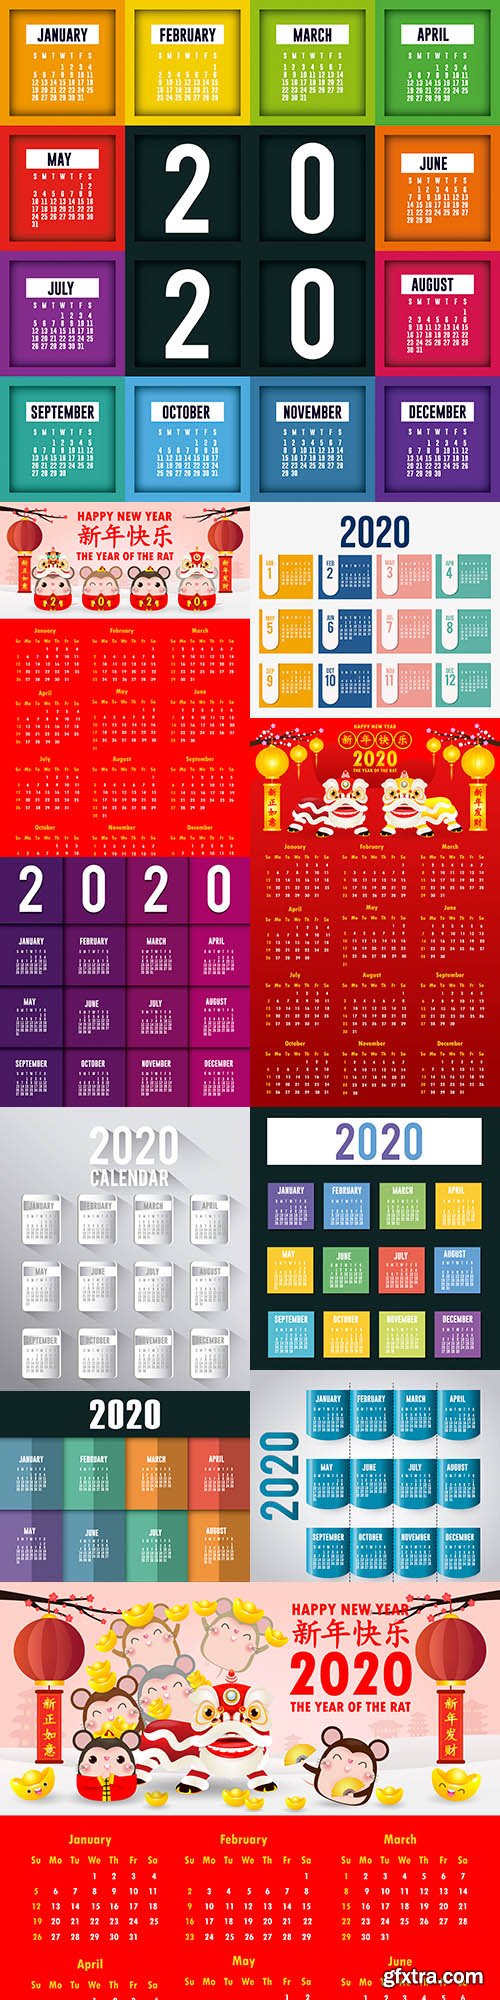 Calendar New Year 2020 design template 4